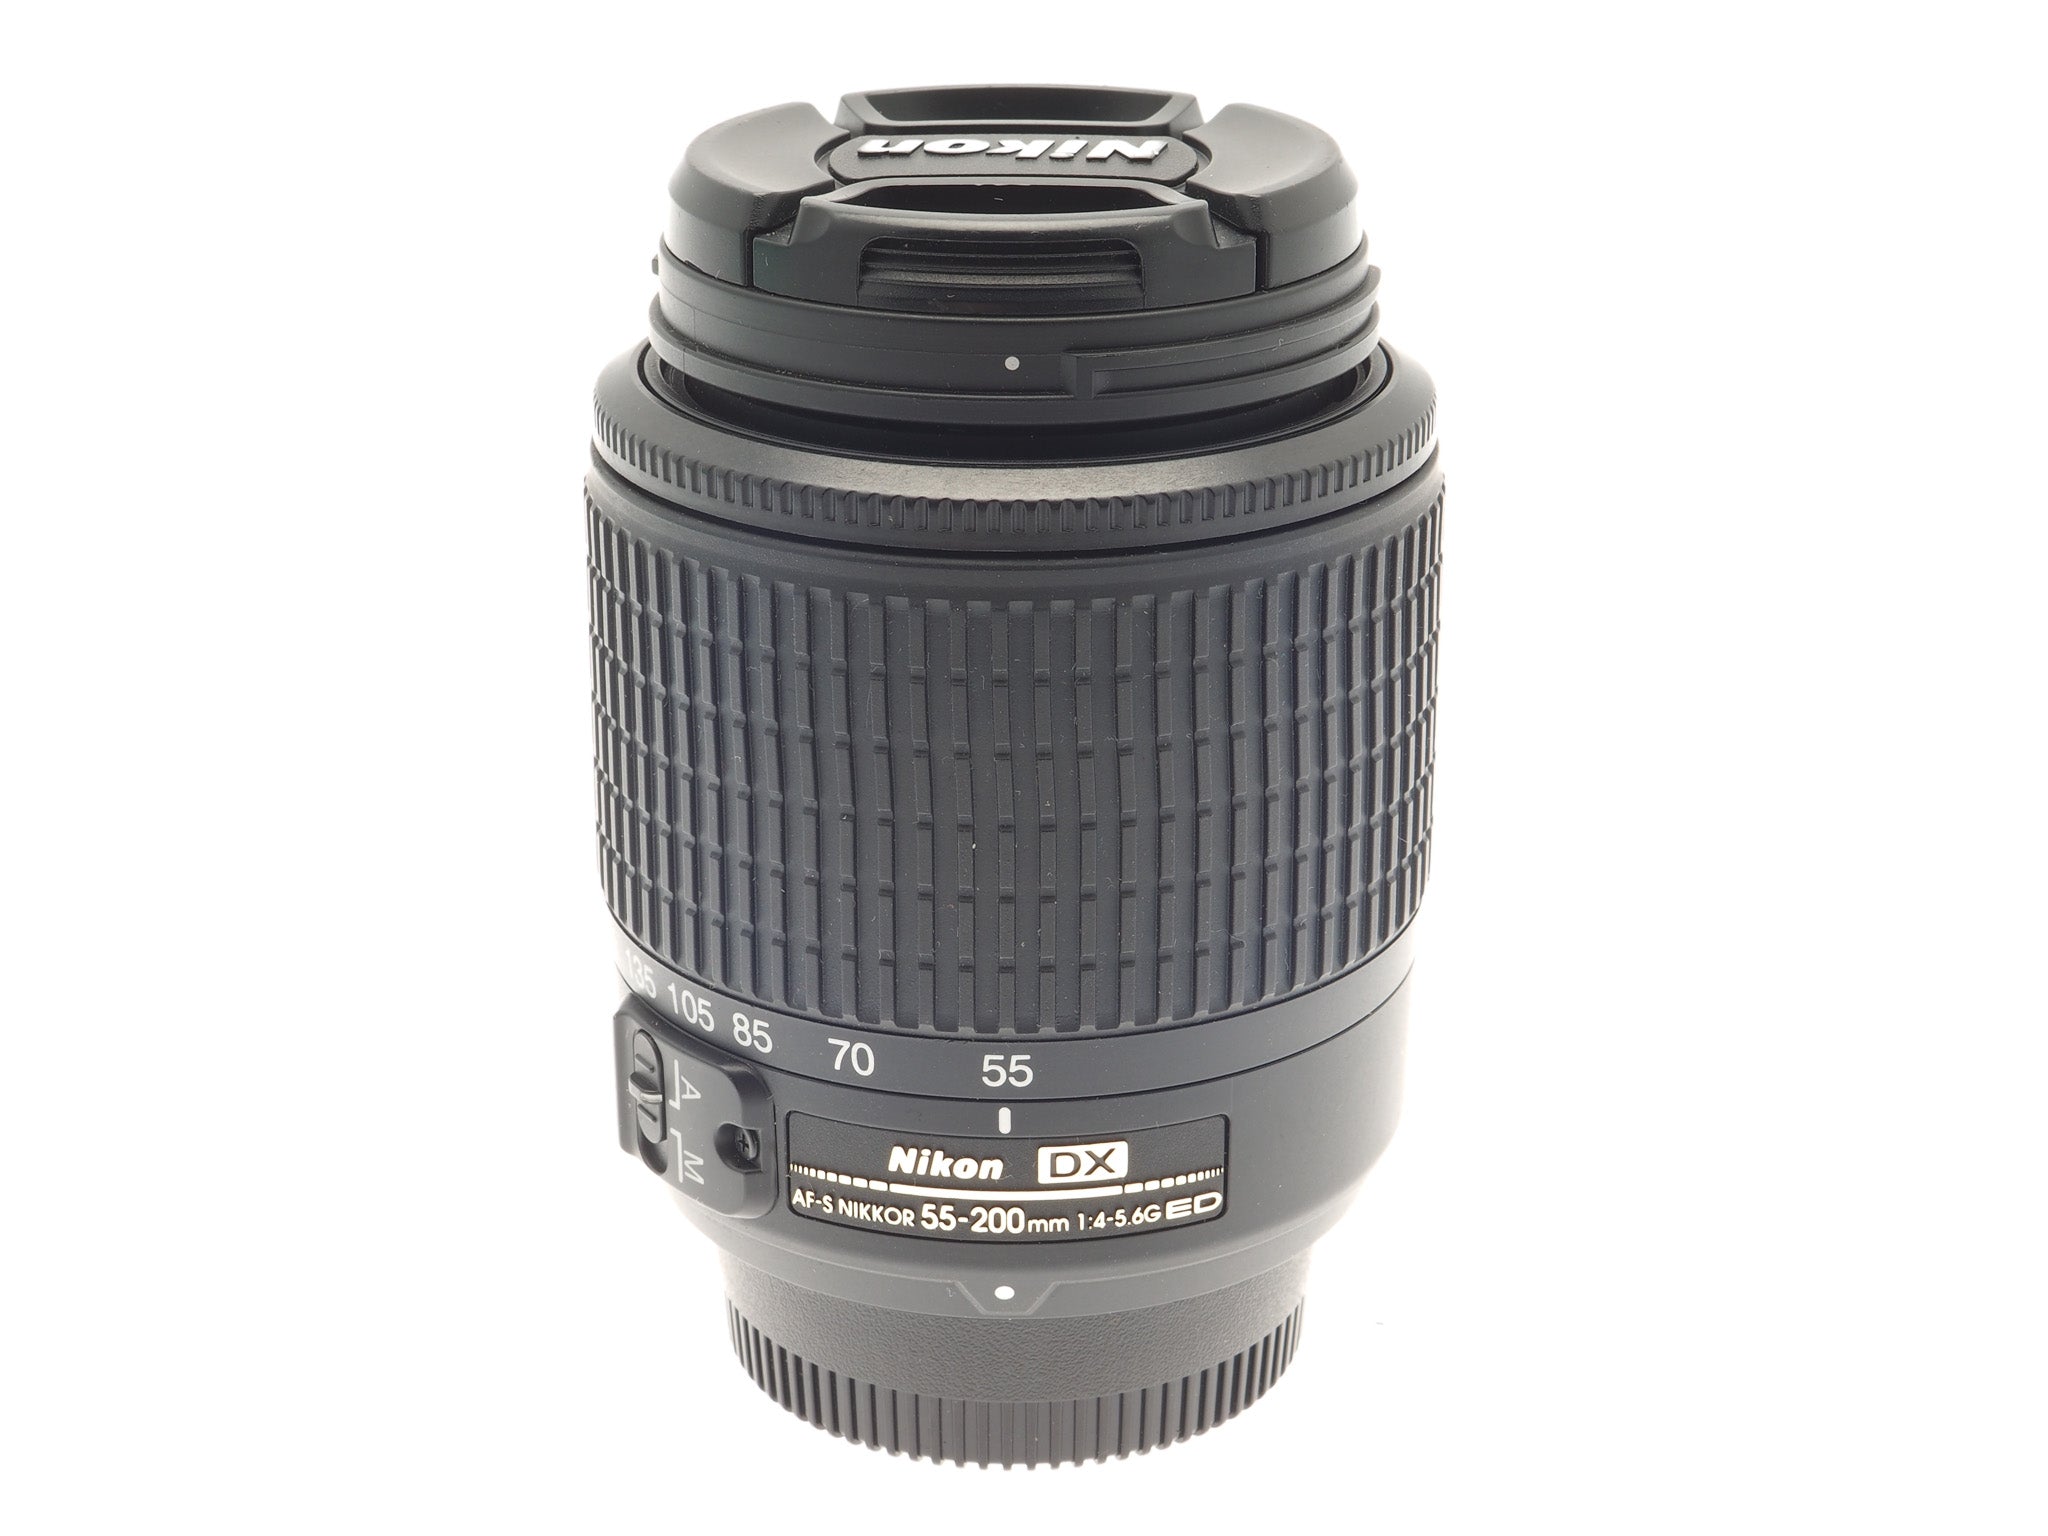 Nikon 55-200mm f4-5.6 AF-S Nikkor G ED - Lens